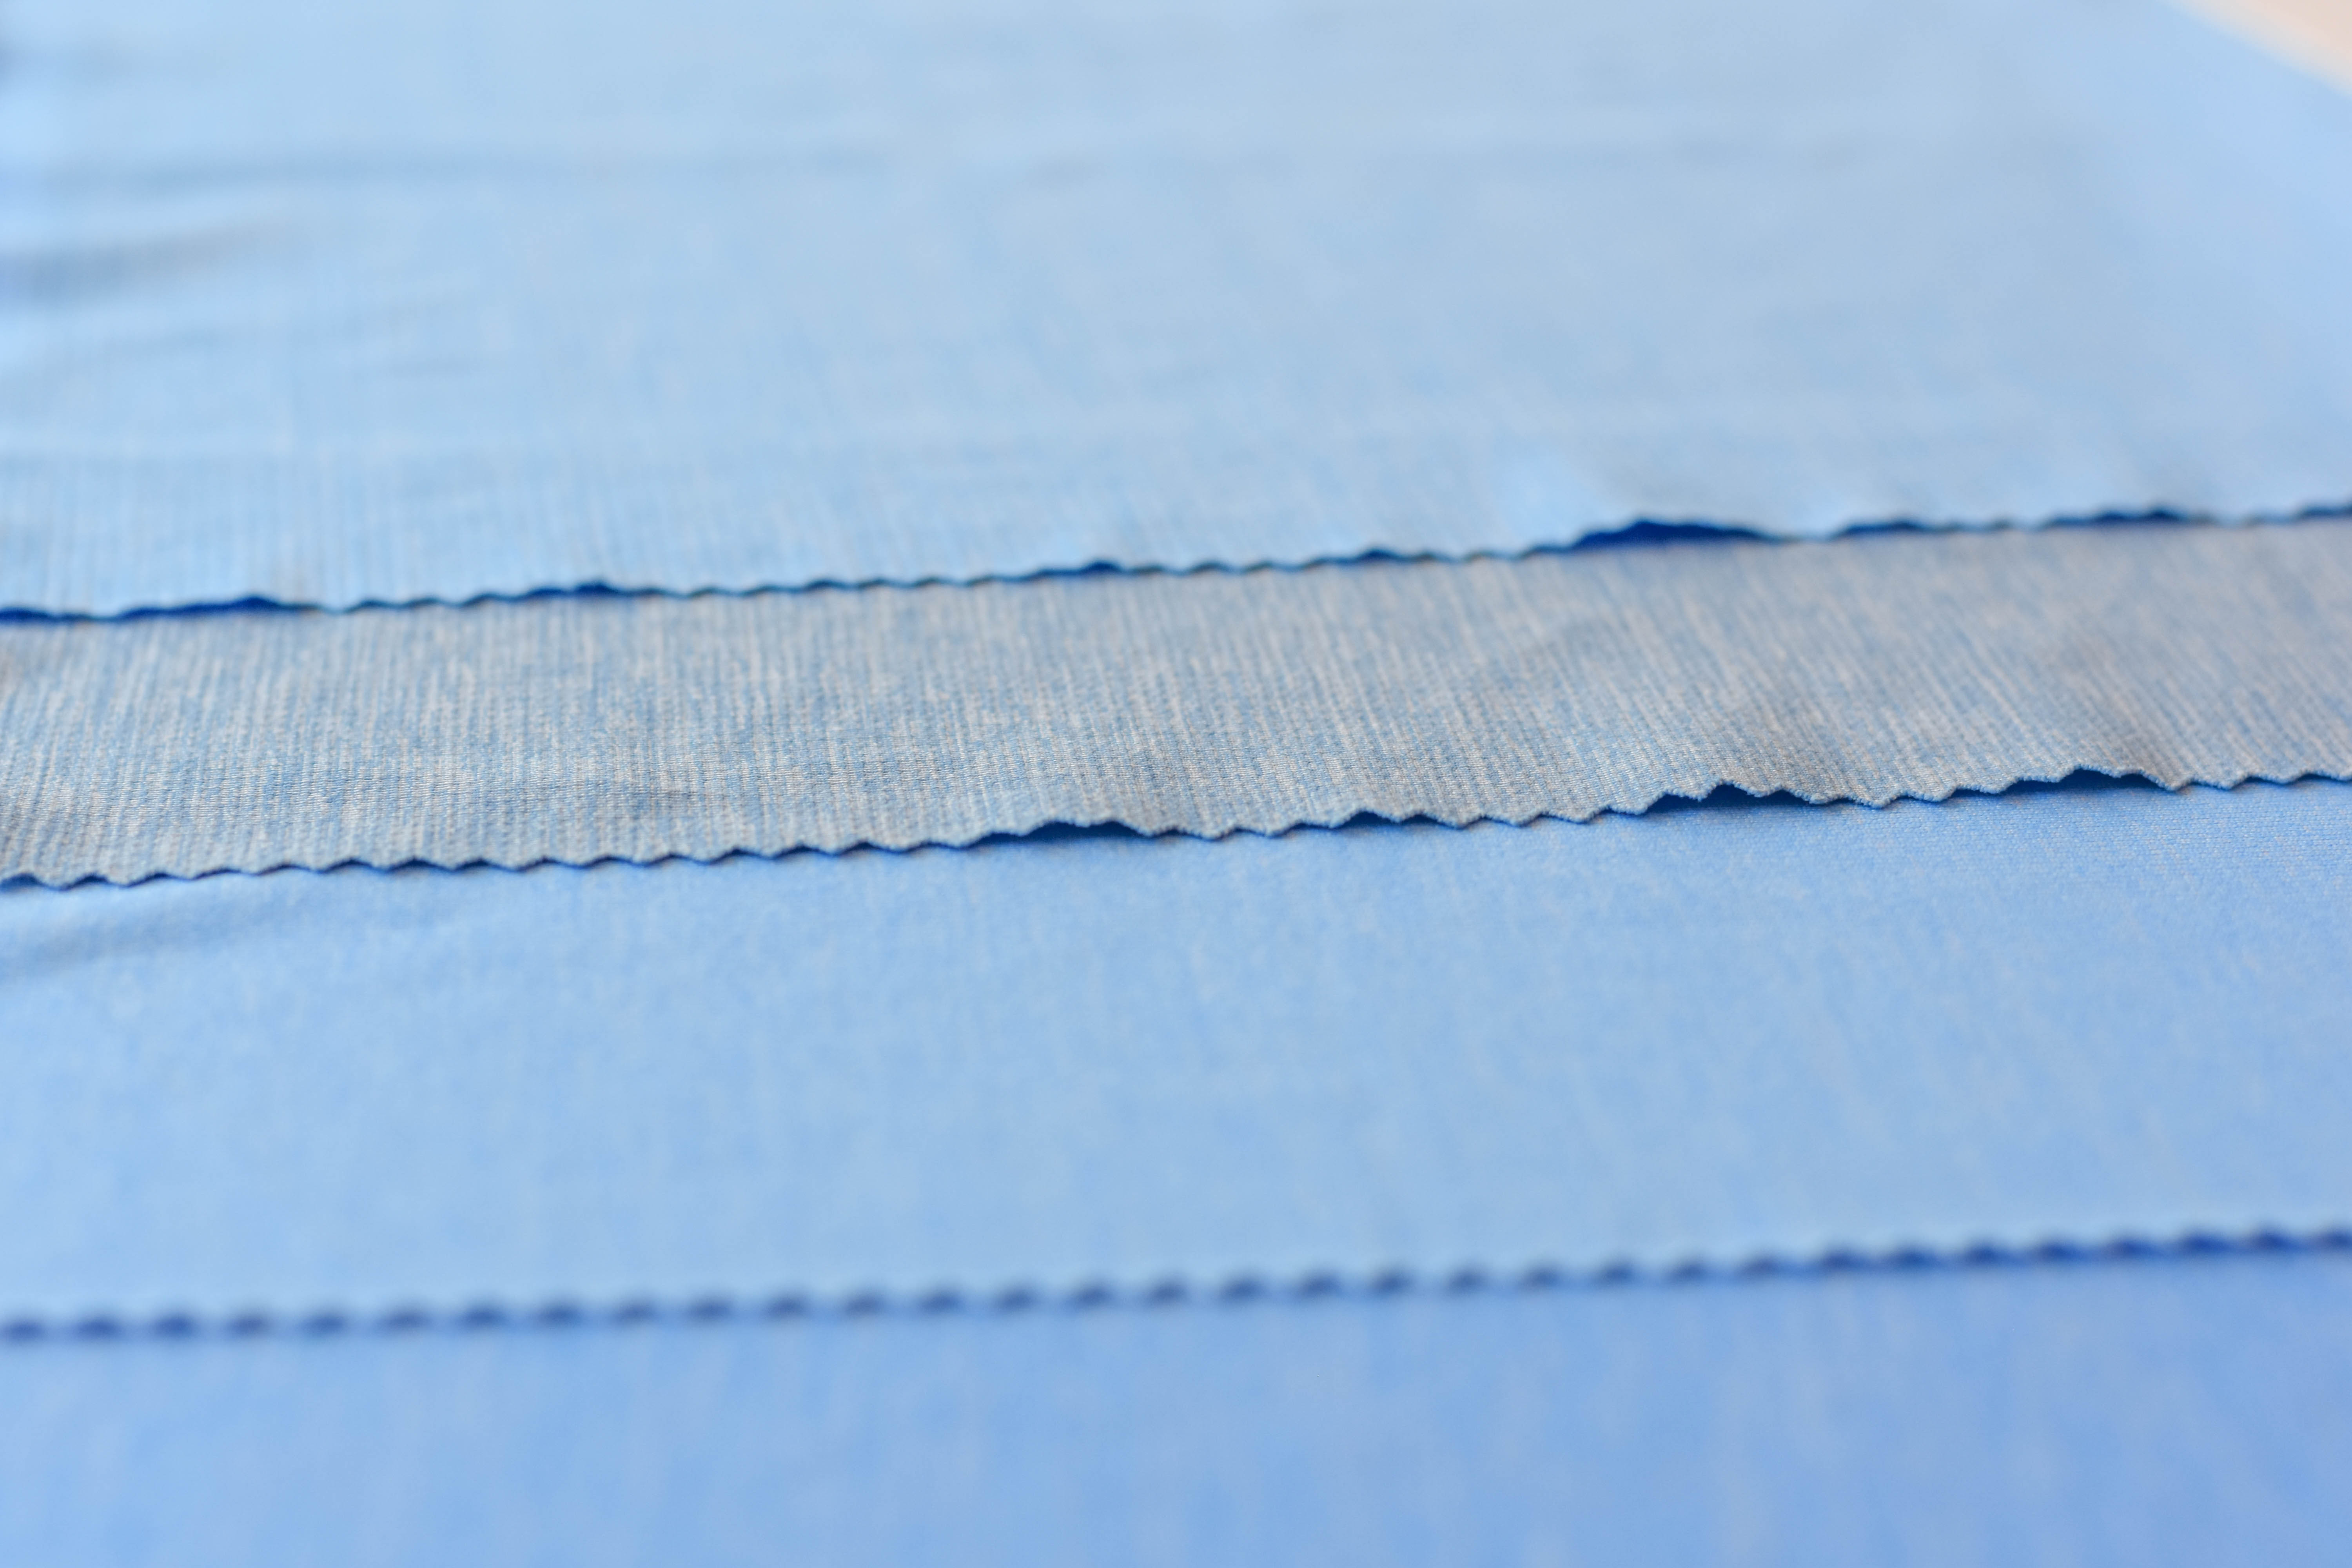 Blue and gray fabrics